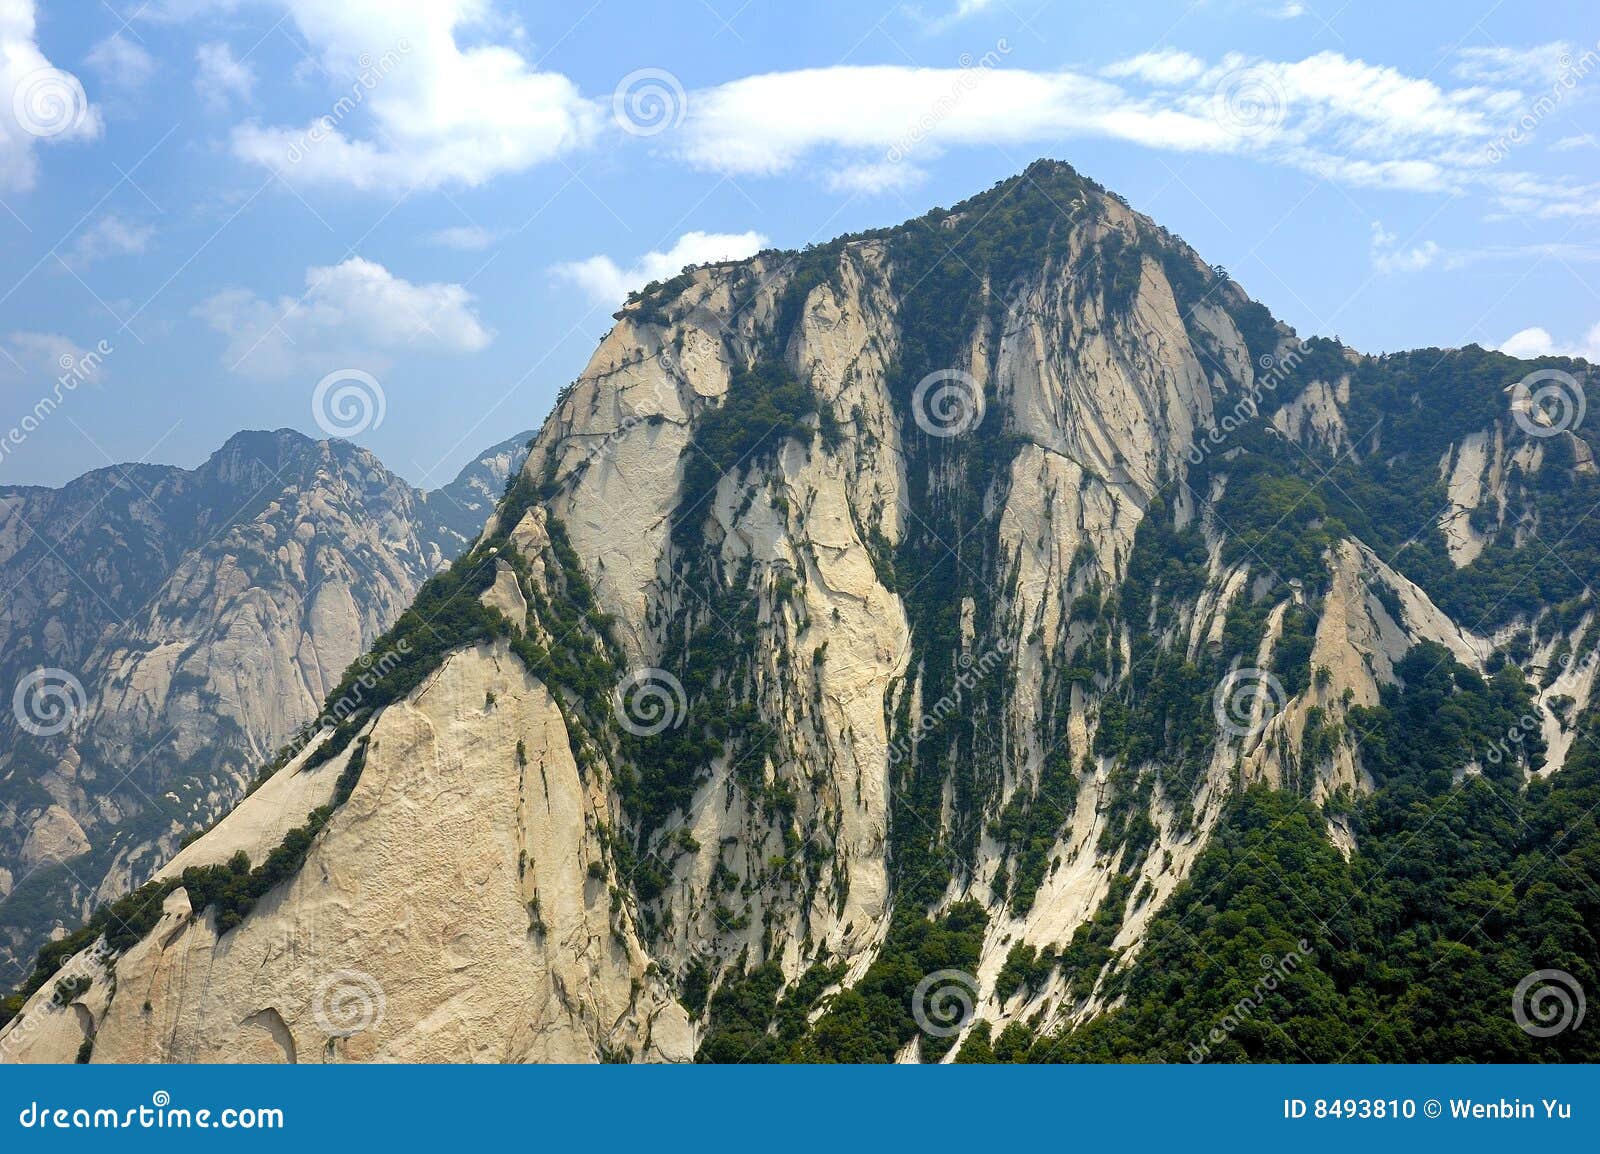 山岳地貌图片